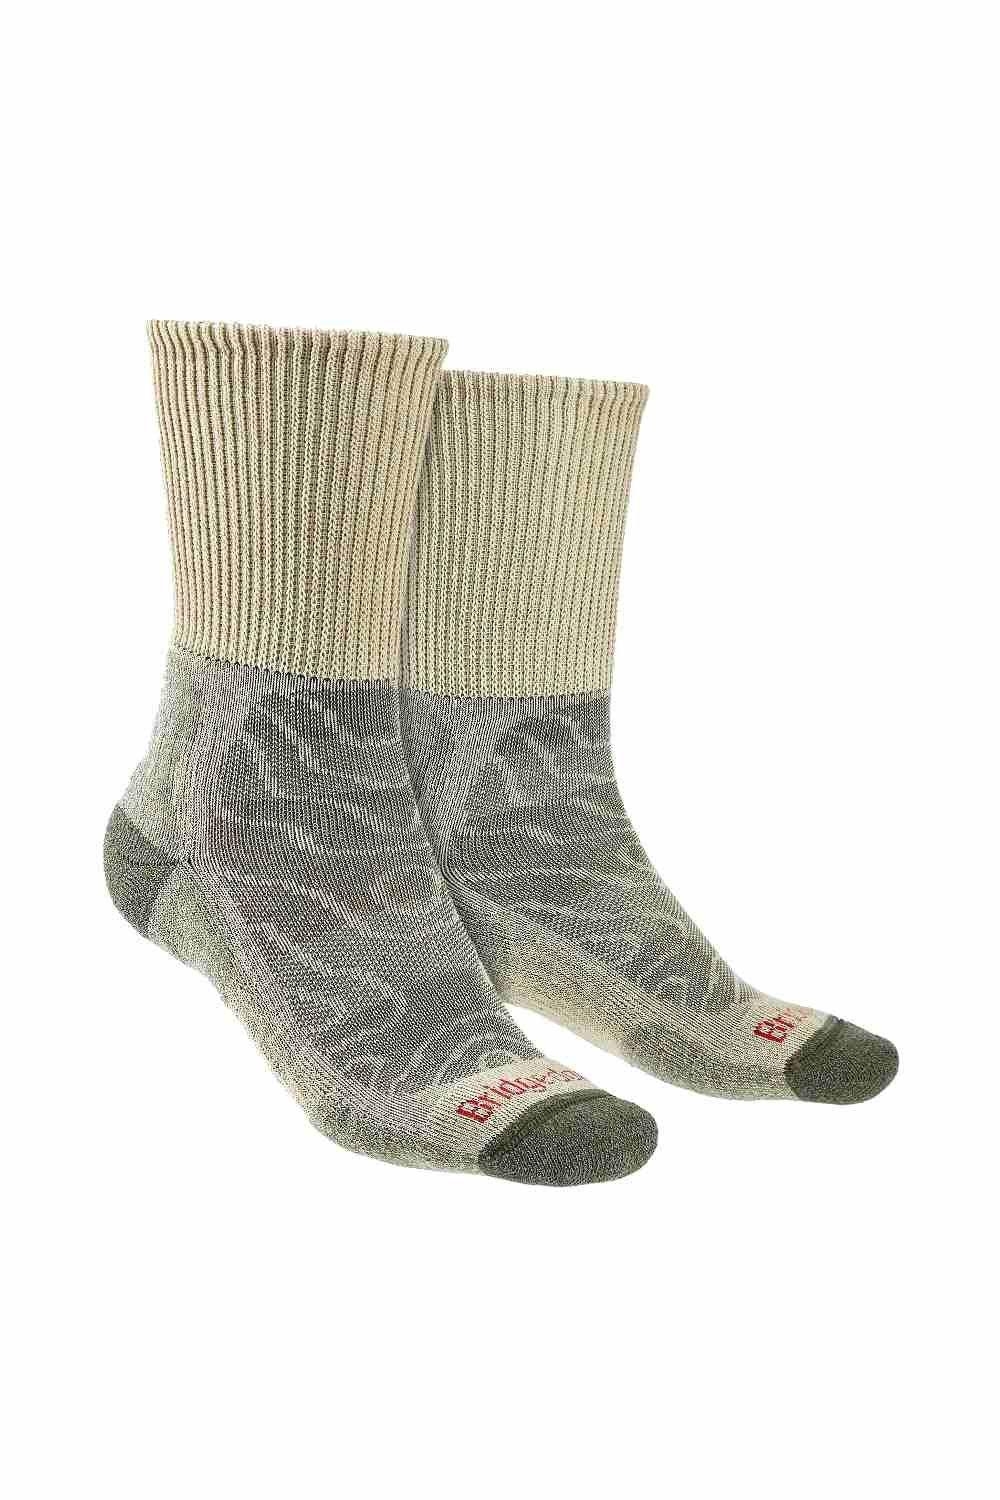 Hiking Lightweight Merino Wool Cushioned Boot Socks